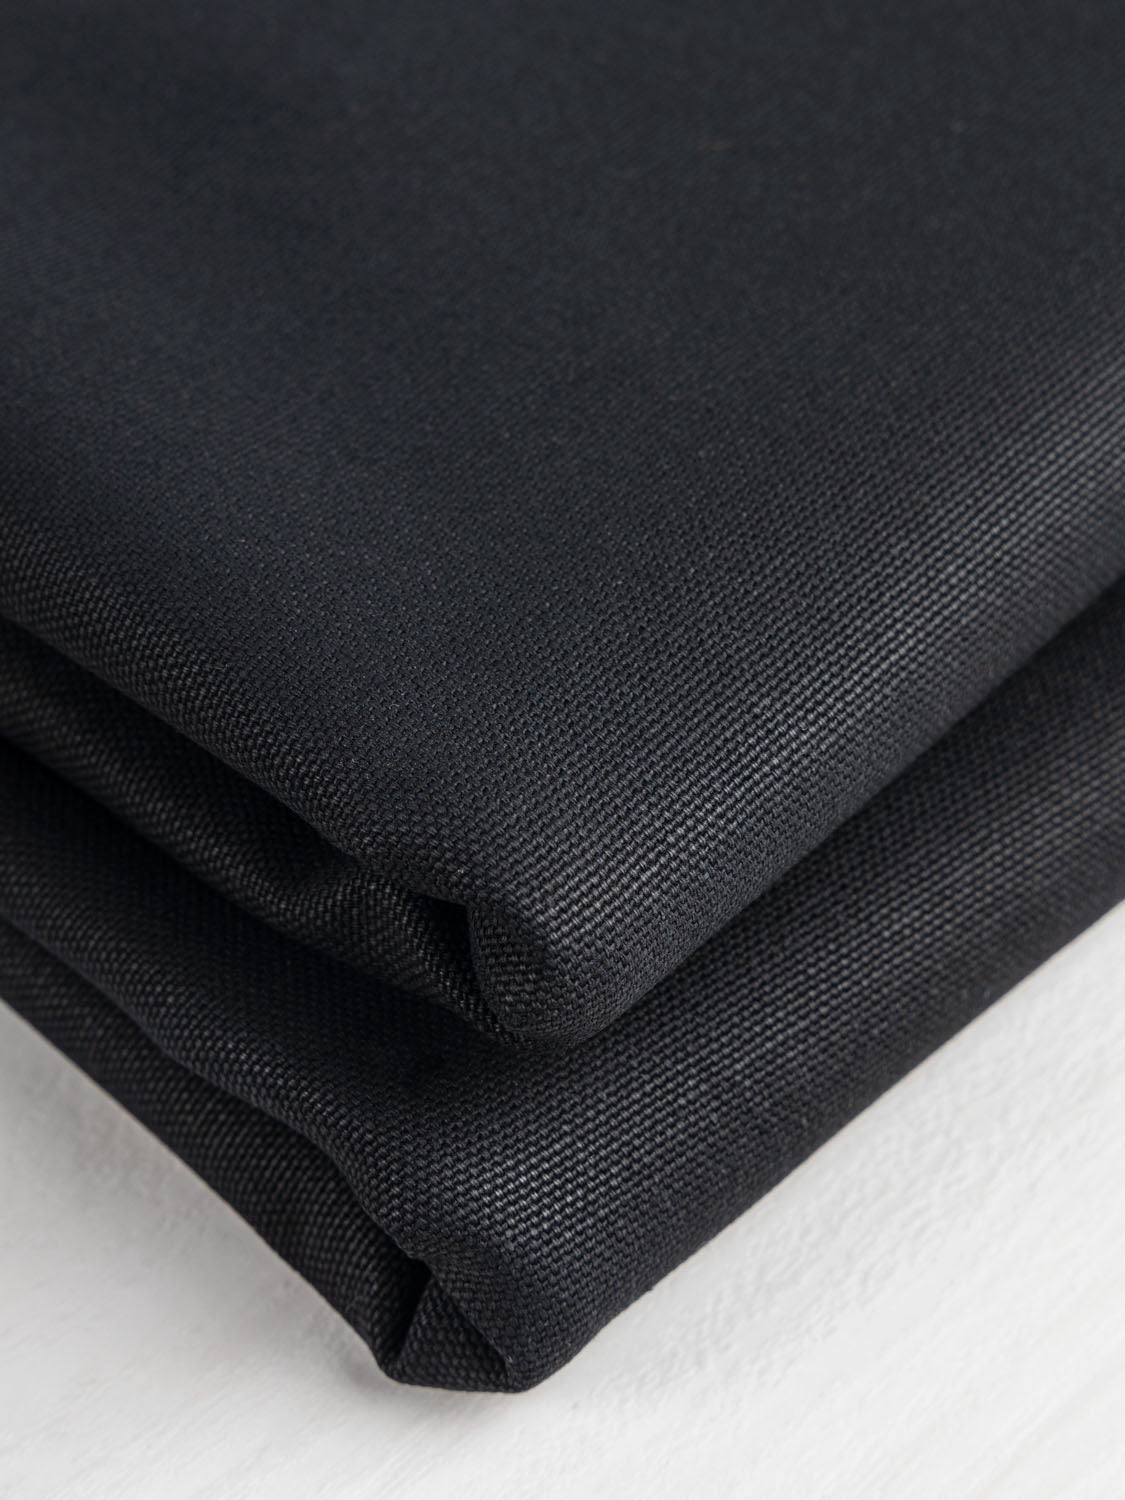 Bottomweight Fabrics, Core Fabrics